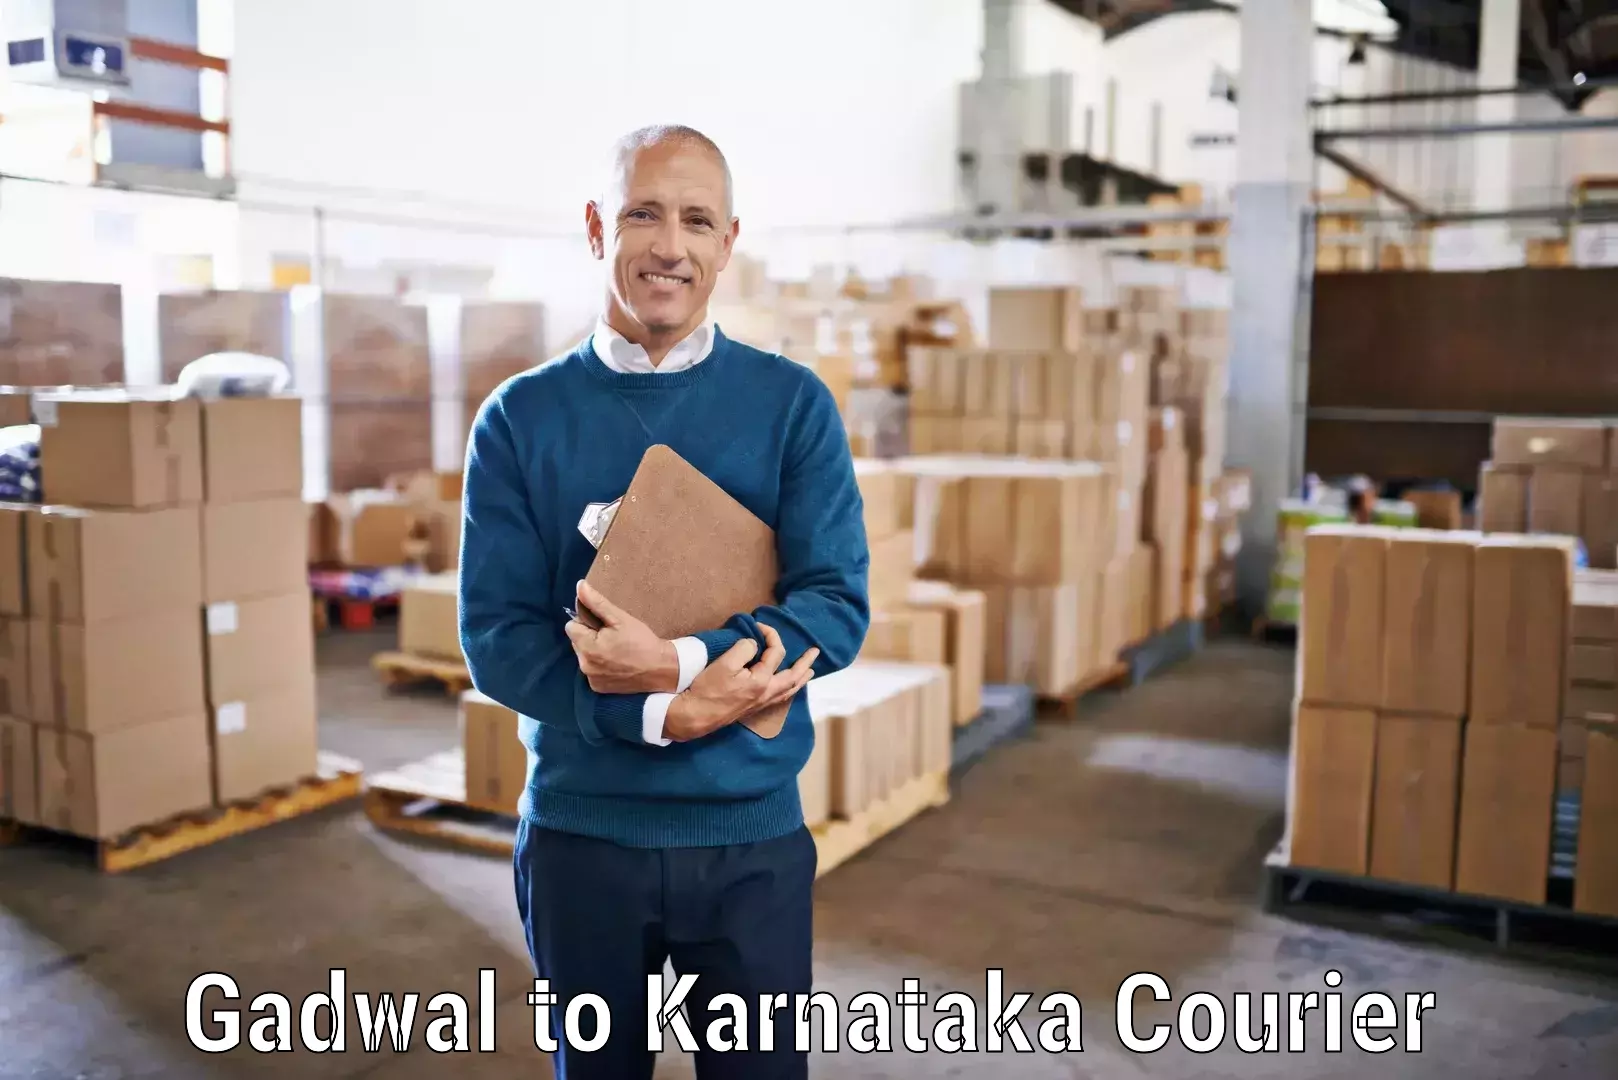 Smart logistics solutions Gadwal to Karnataka